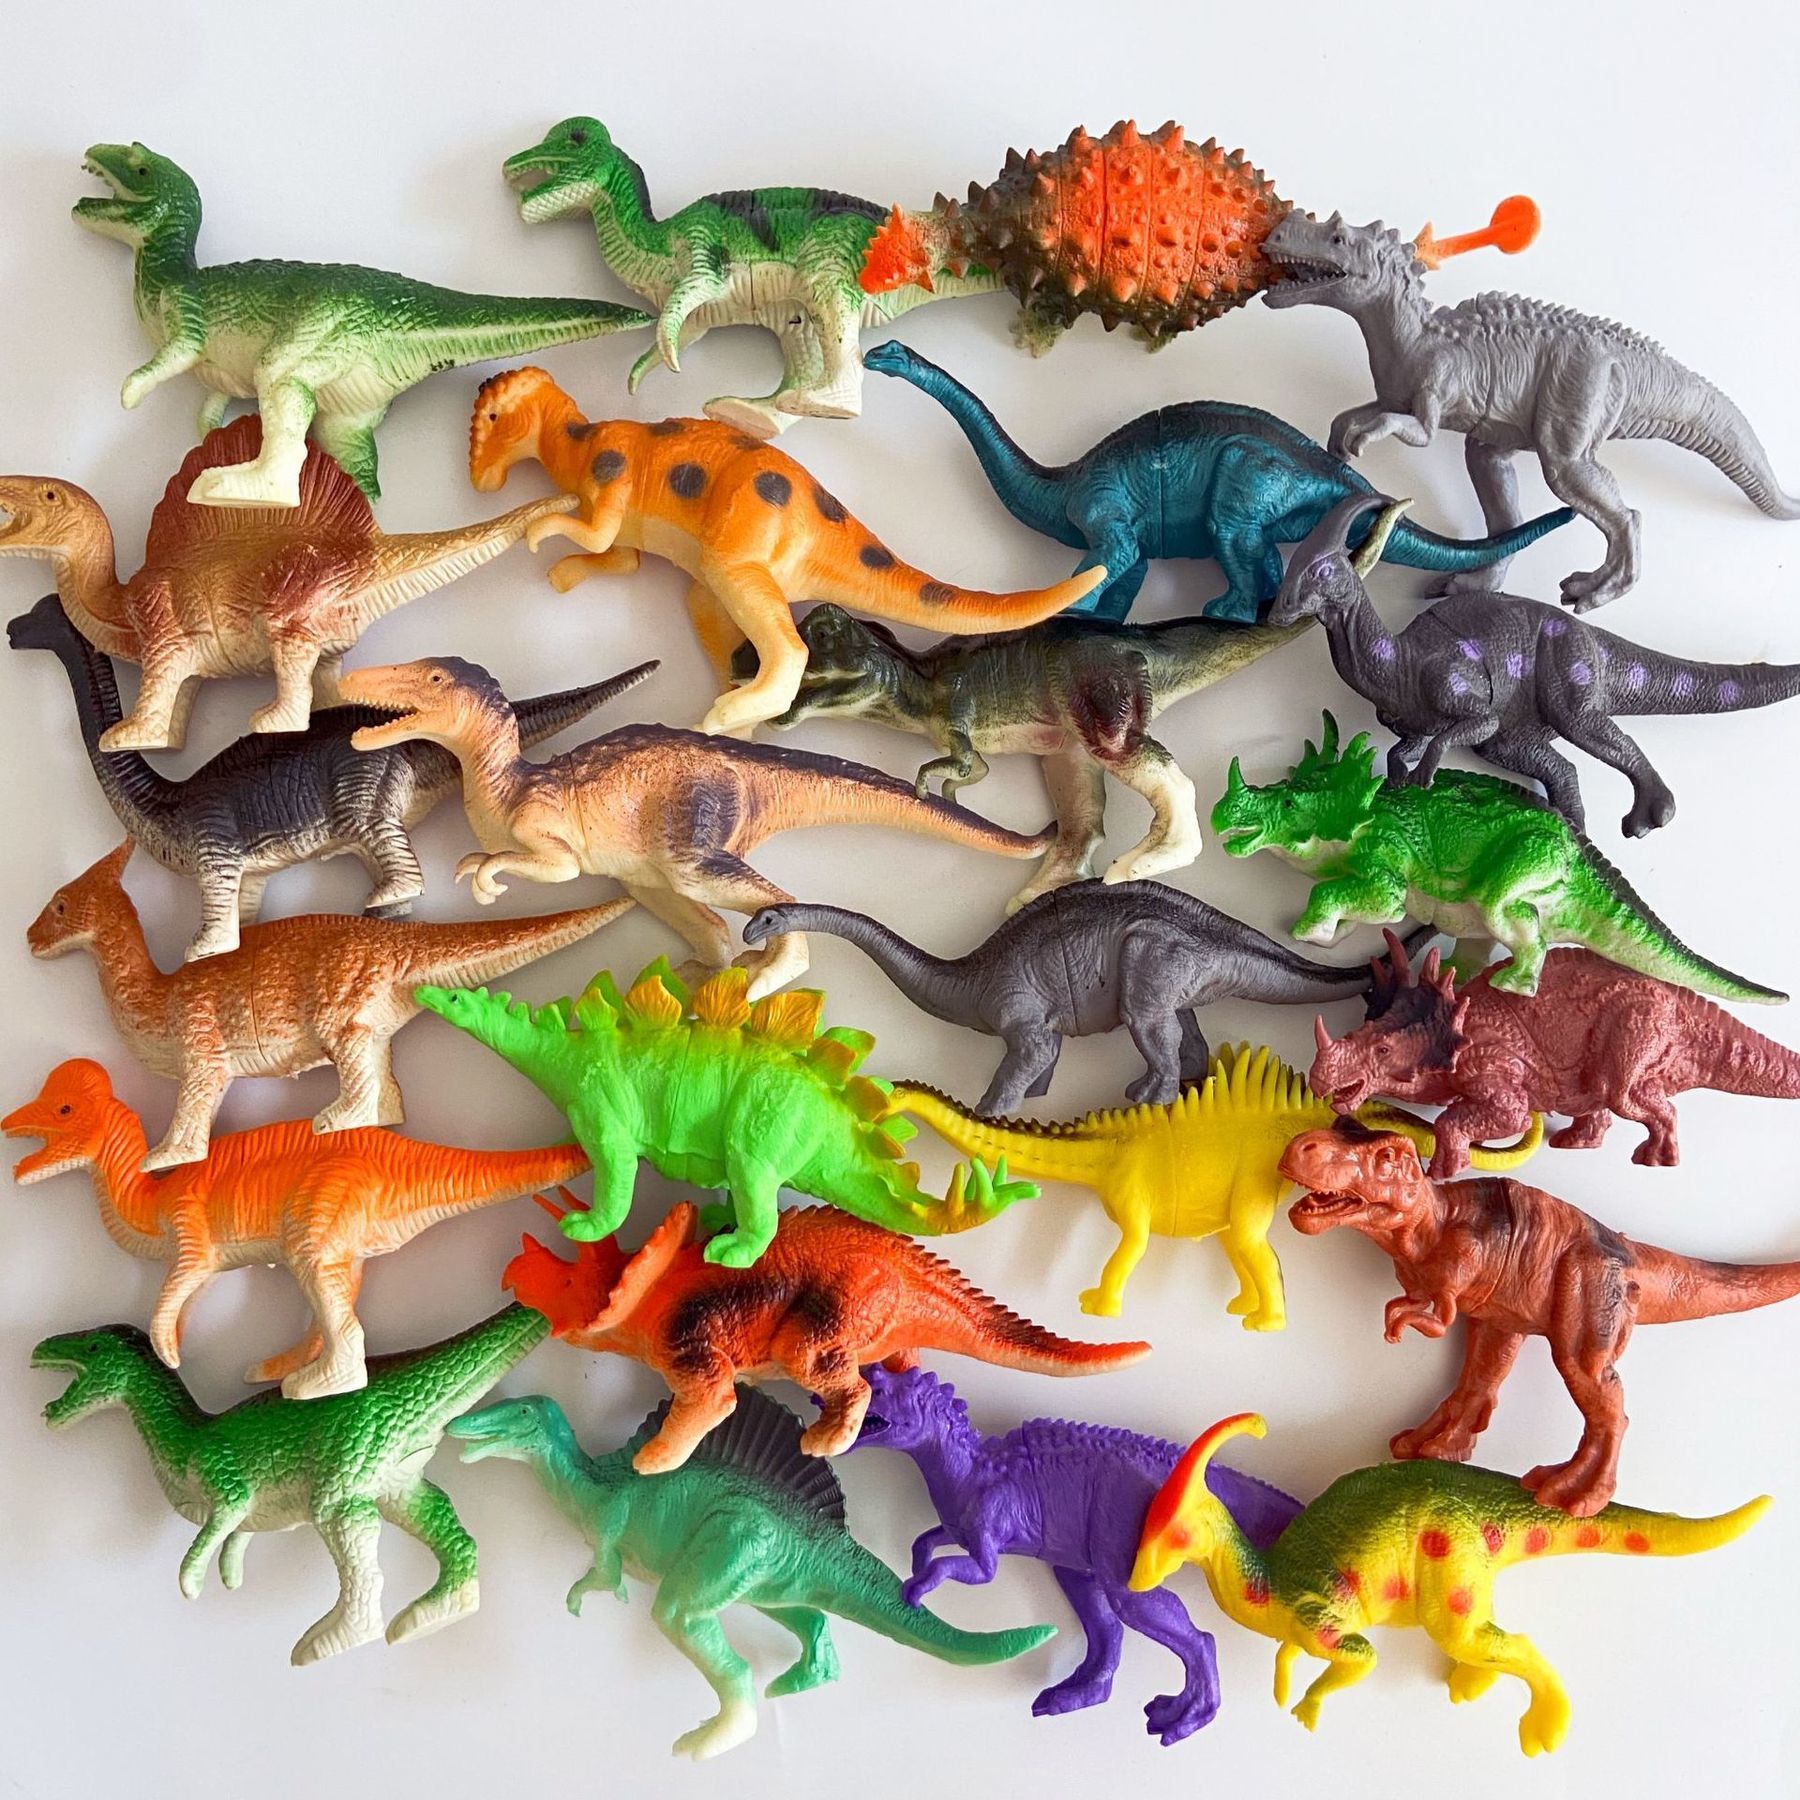 Dinosaur Figure Toy Brachiosaurus Plesiosaur Dinosaur Action Figures Kids Gift 